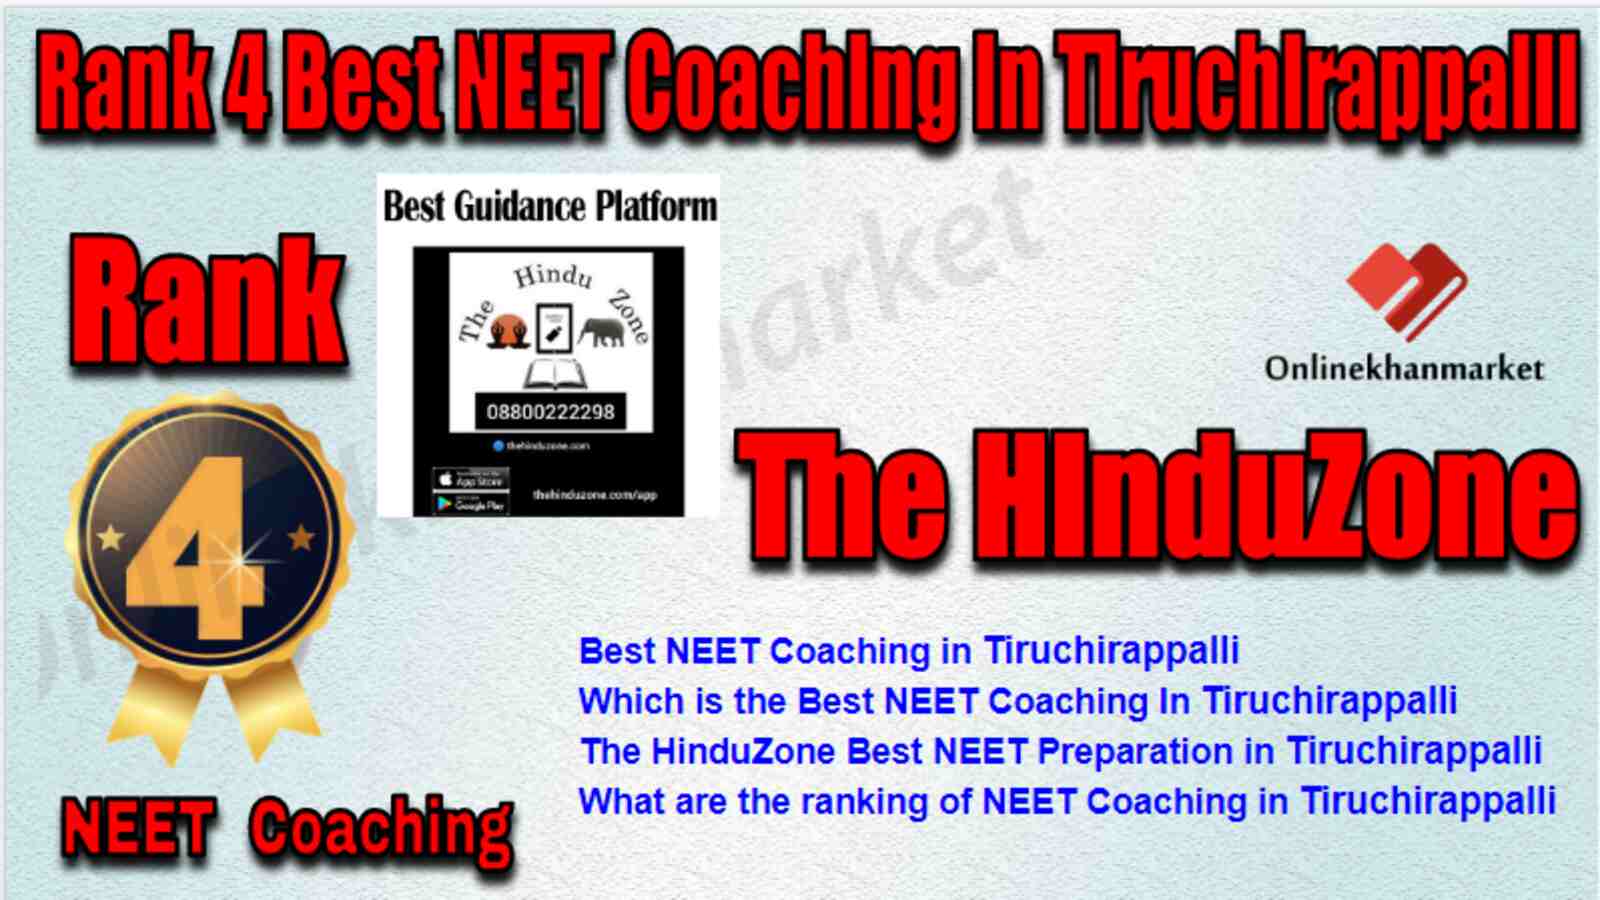 Rank 4 Best NEET Coaching in Tiruchirappalli